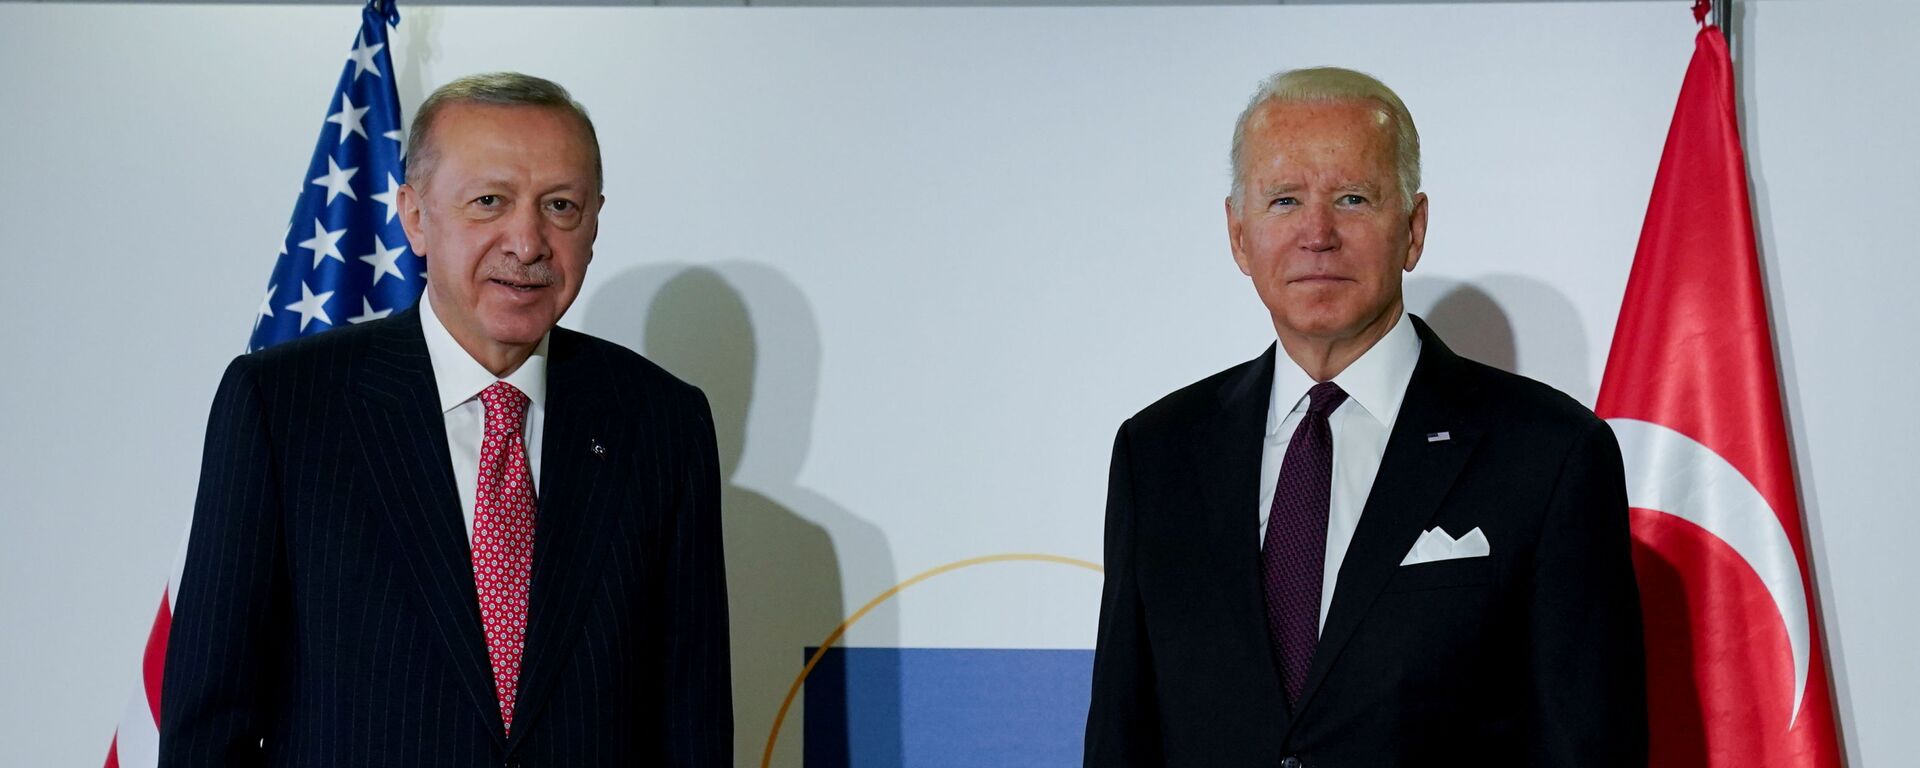 الرئيس الأمريكي جو بايدن والرئيس التركي رجب طيب أردوغان في اجتماع ثنائي على هامش قمة قادة مجموعة العشرين في روما، إيطاليا، 31 أكتوبر / تشرين الأول 2021 - سبوتنيك عربي, 1920, 10.03.2022